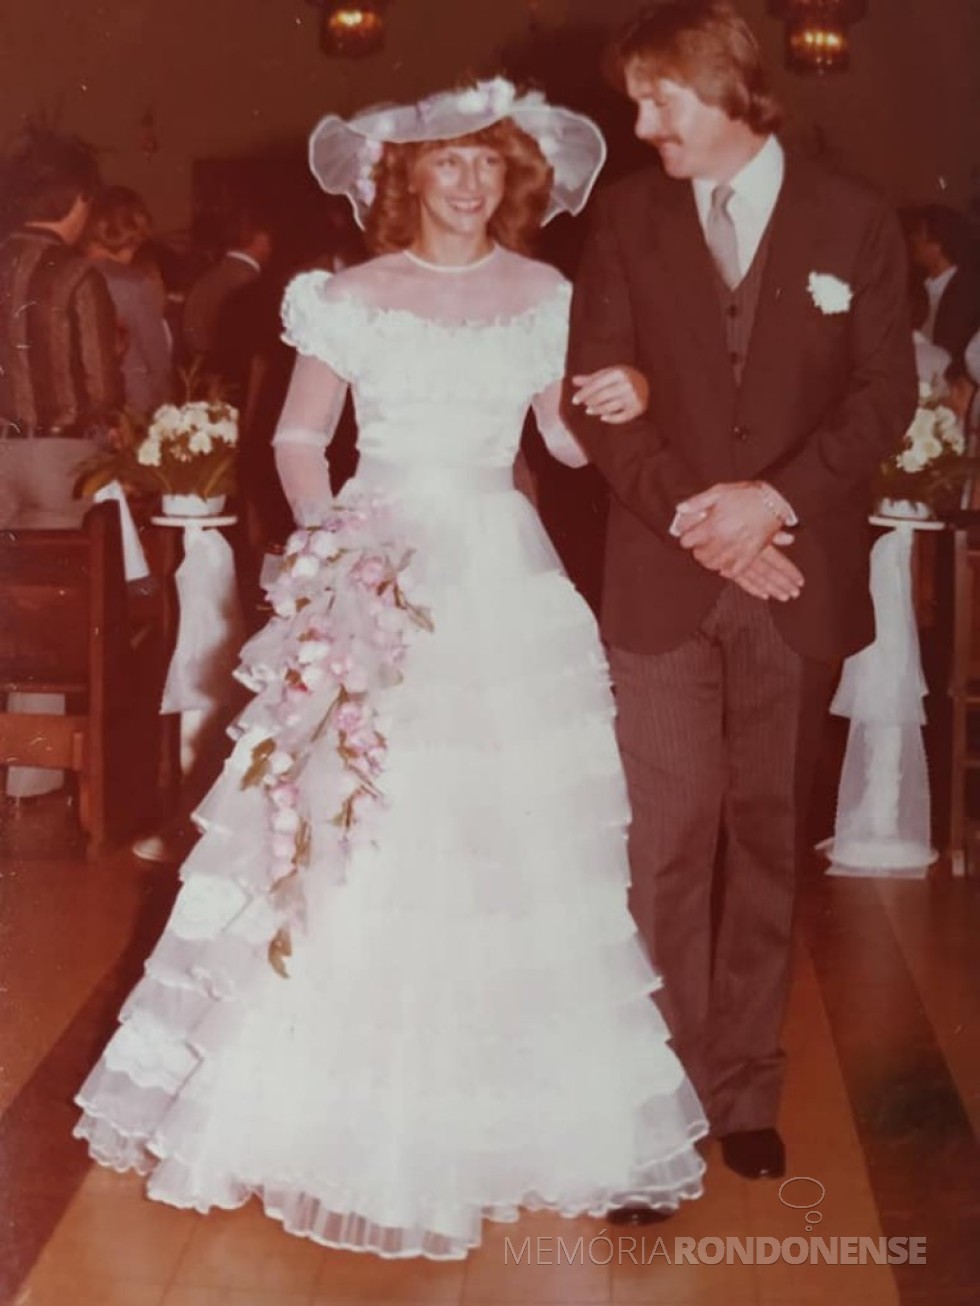 Jovens rondonenses Margaret Krepsky e Sérgio Giordani que se casaram em maio de 1983.
Imagem: Acervo do casal - FOTO 7 - 